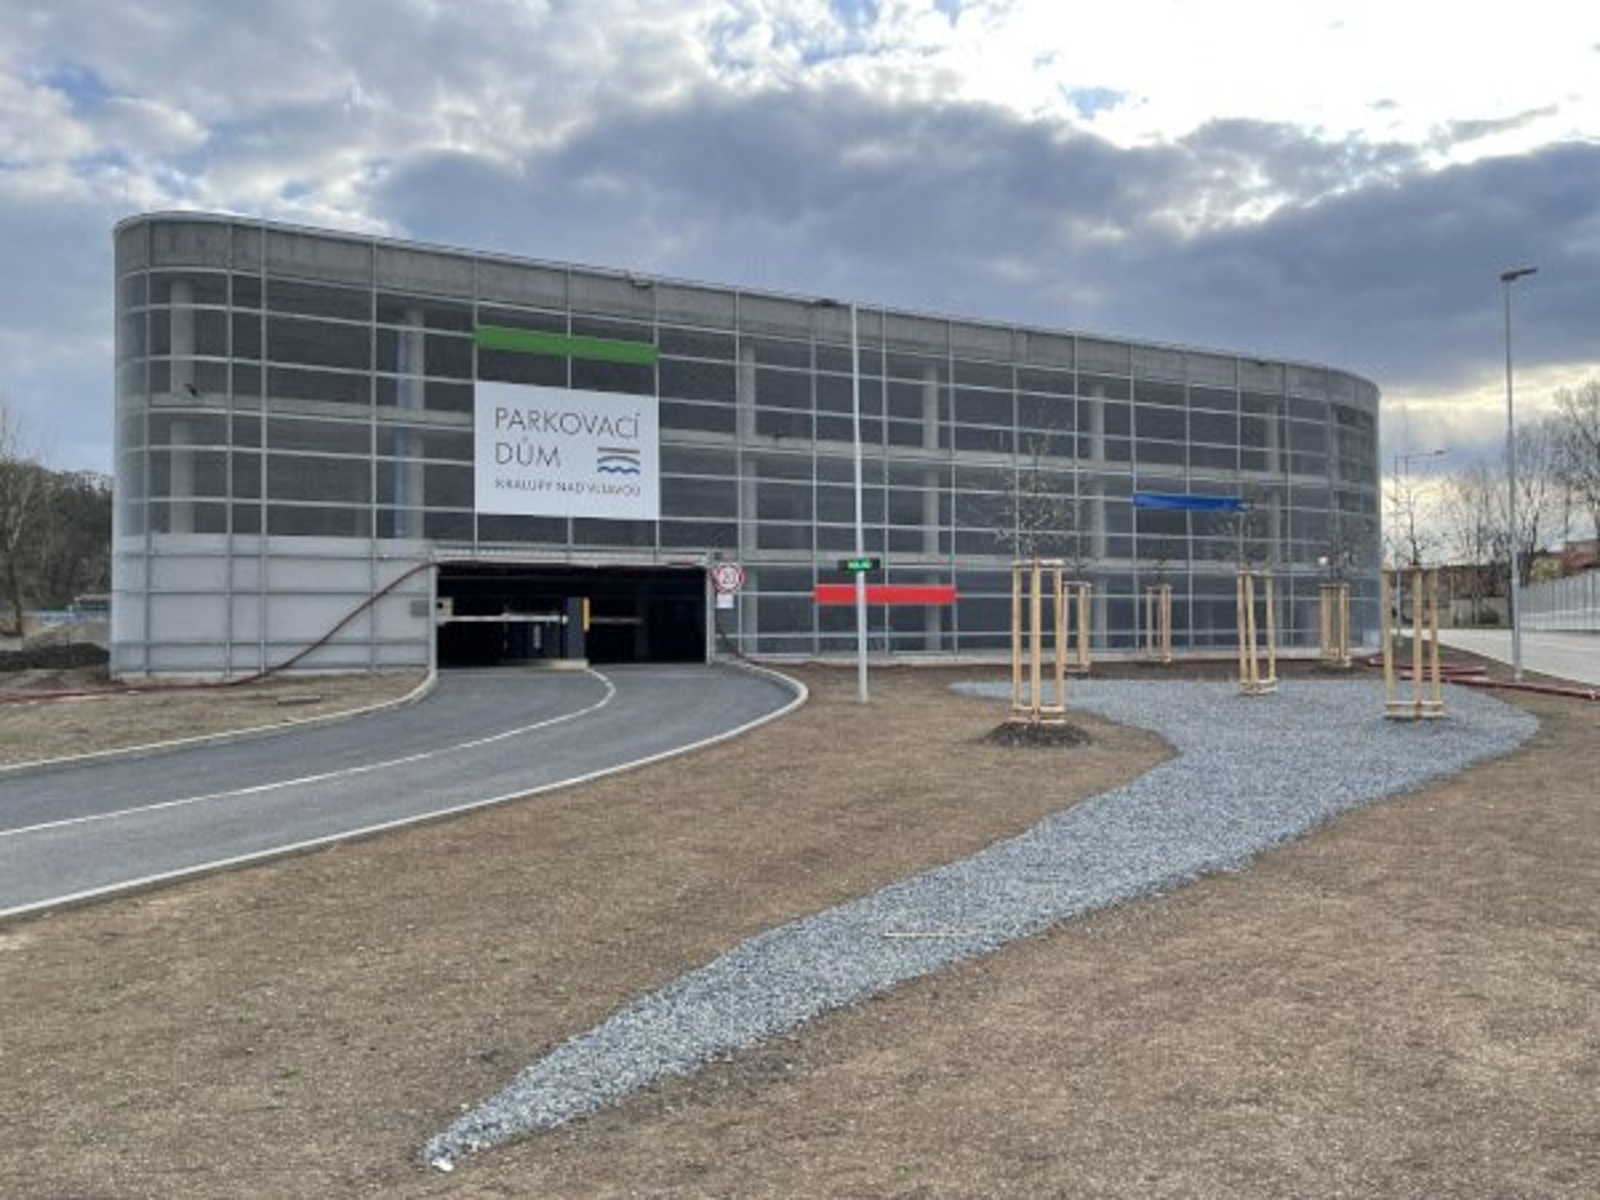 FOTO: Nový parkovací dům i autobusový terminál město představí veřejnosti -  Mělnický deník